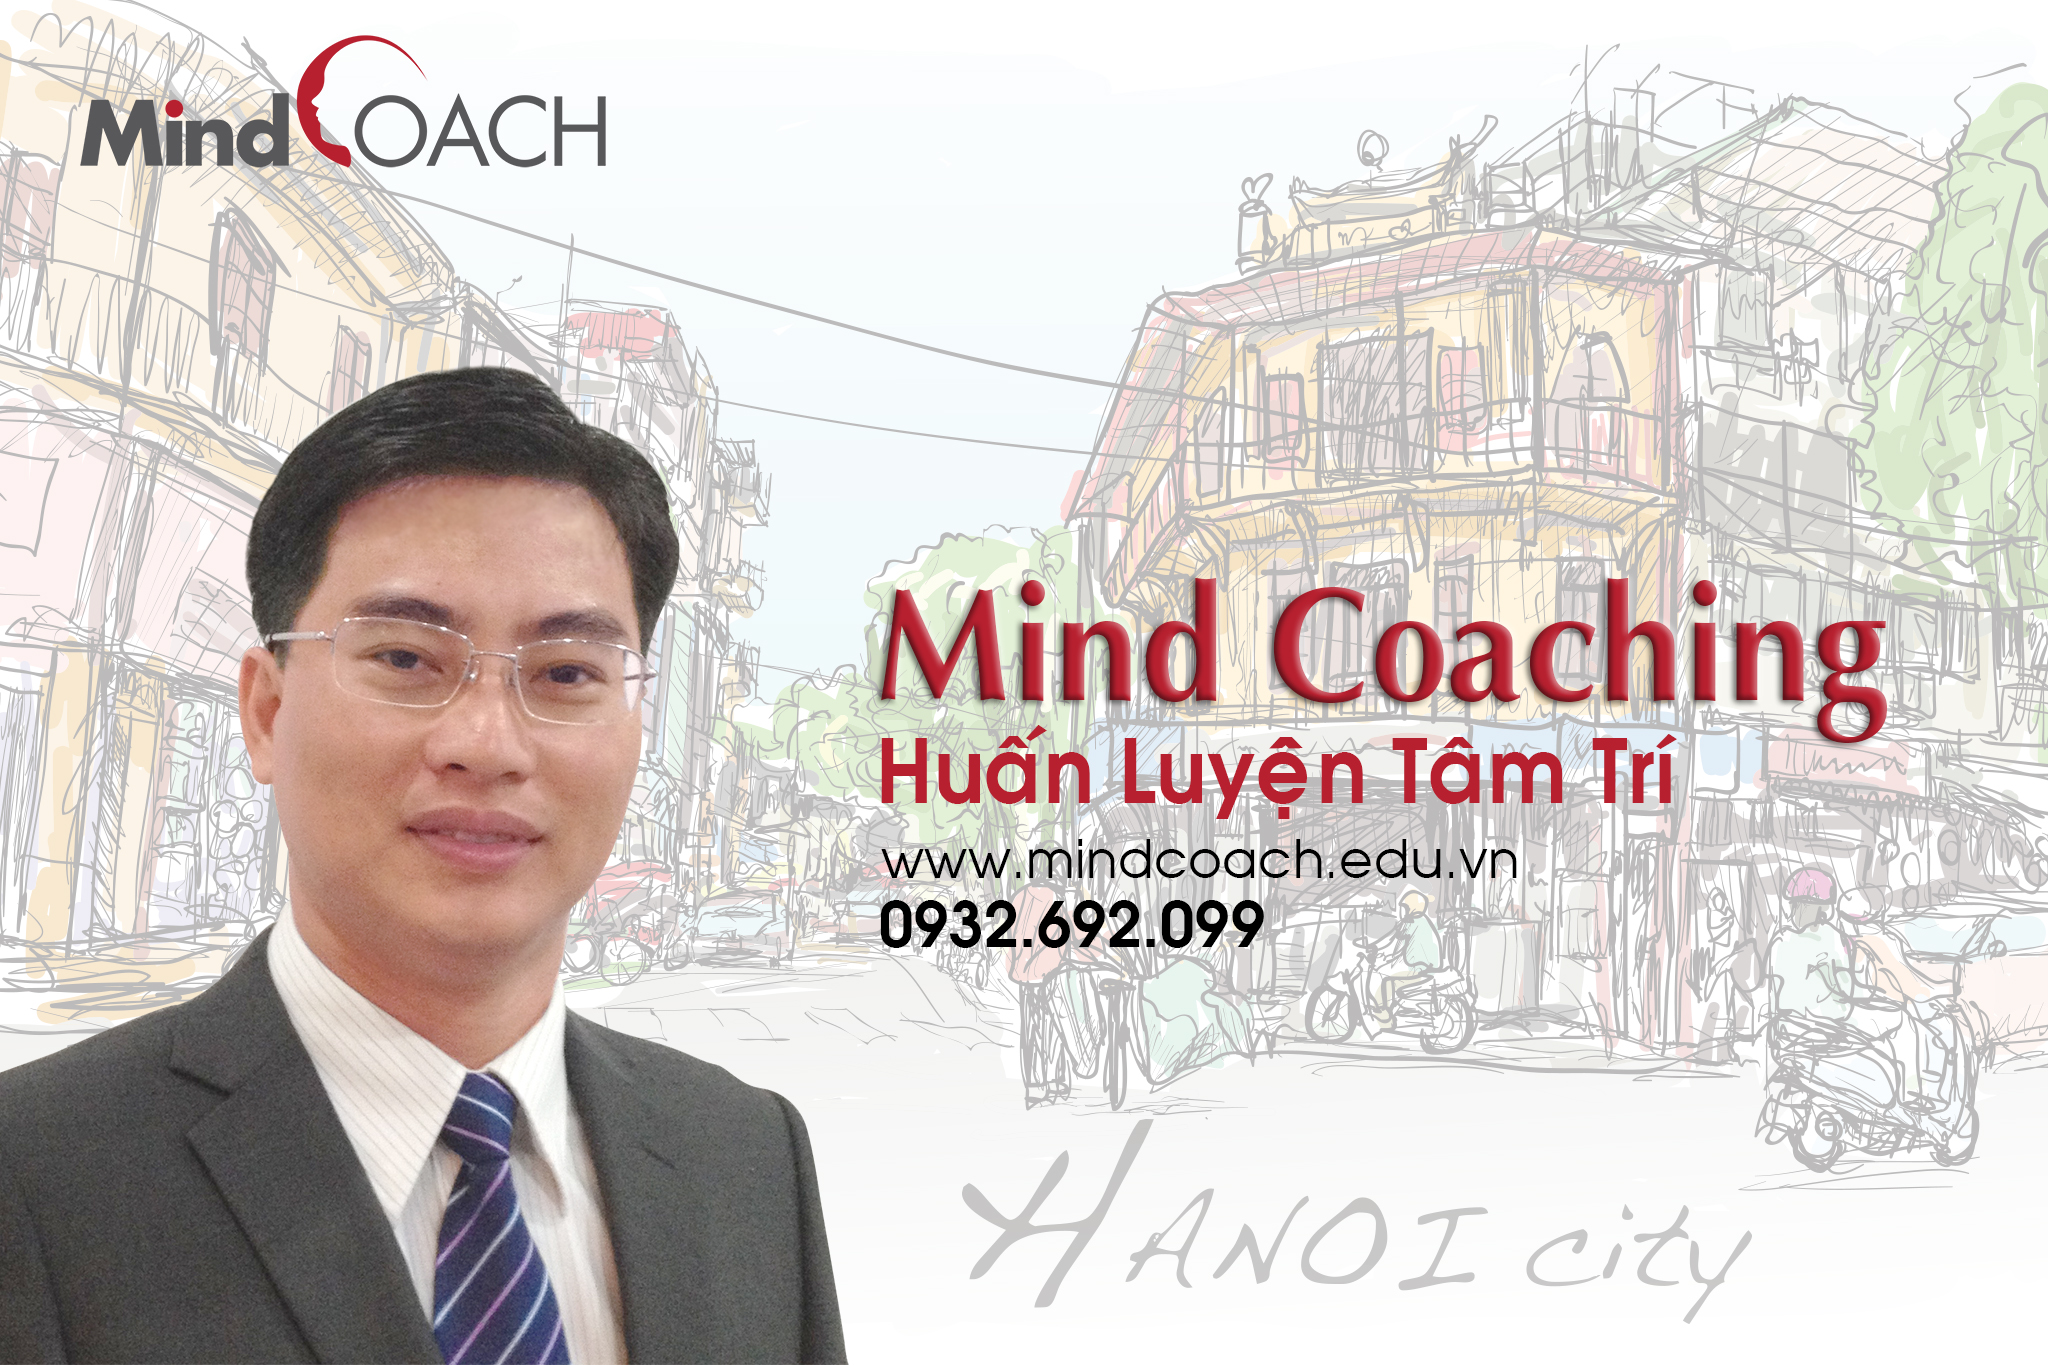 Mindcoaching_huan luyen tam tri_HN.jpg